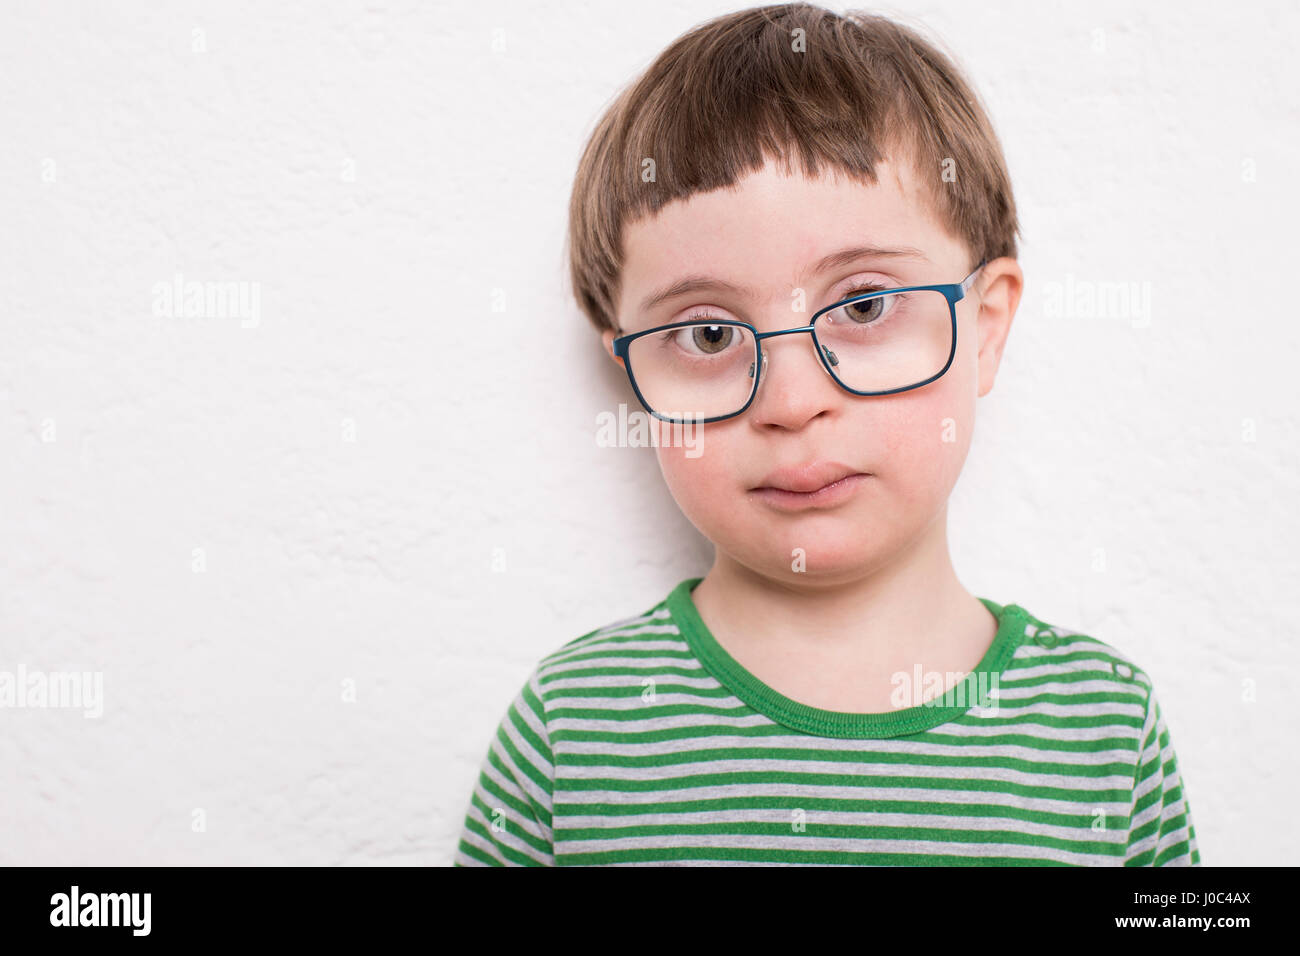 Portrait de jeune garçon à lunettes, contre fond blanc Banque D'Images